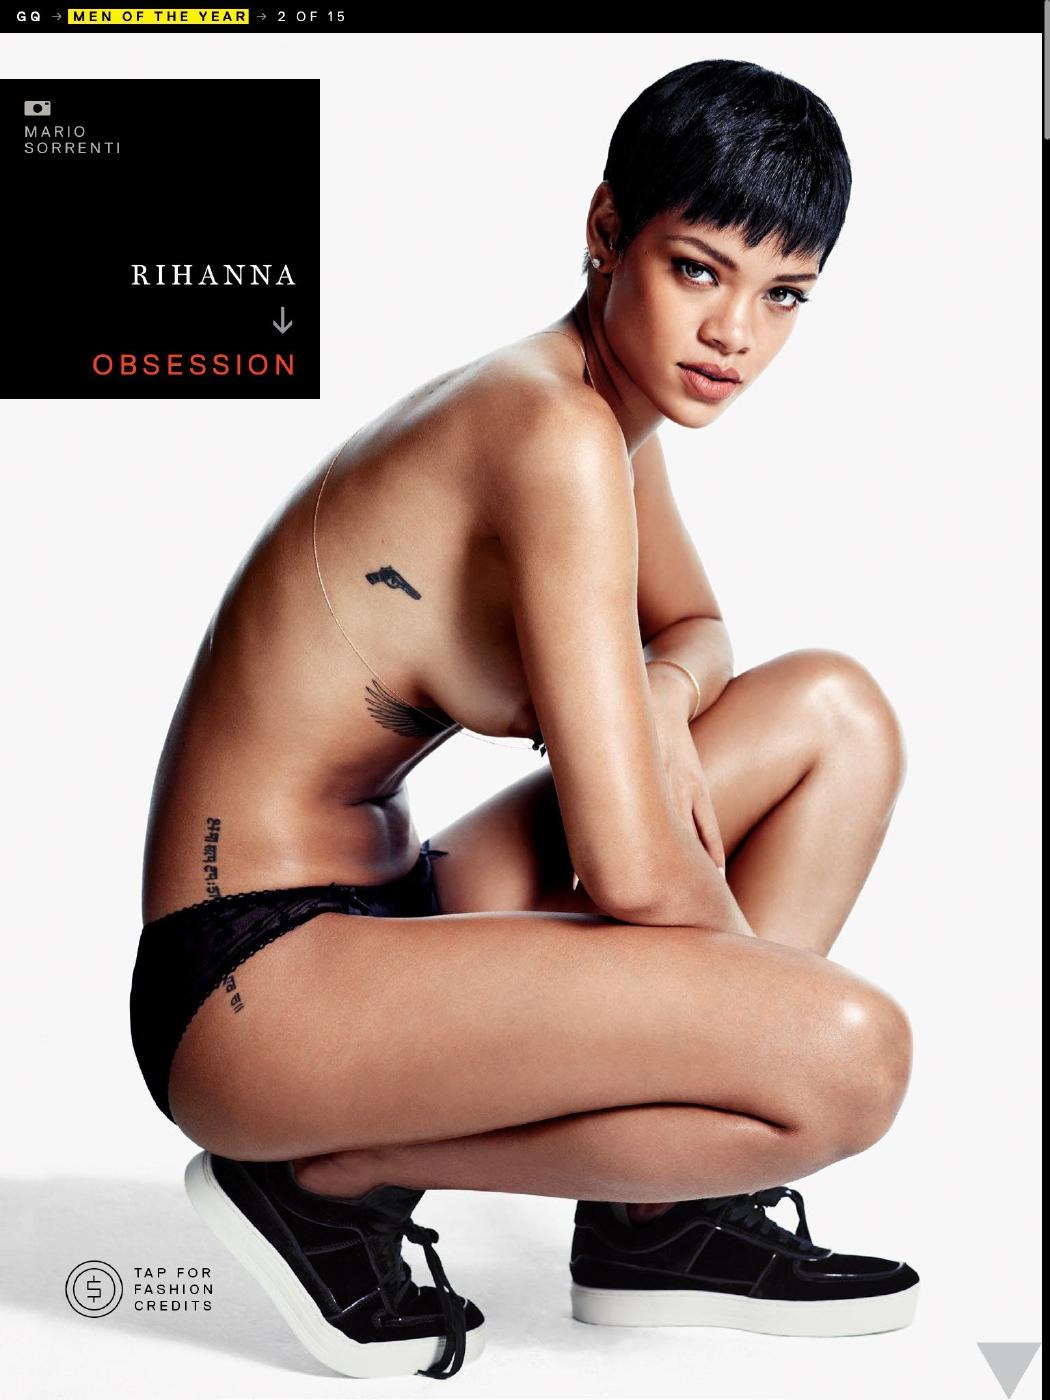 Leaked rhianna nude photos Rihanna Topless